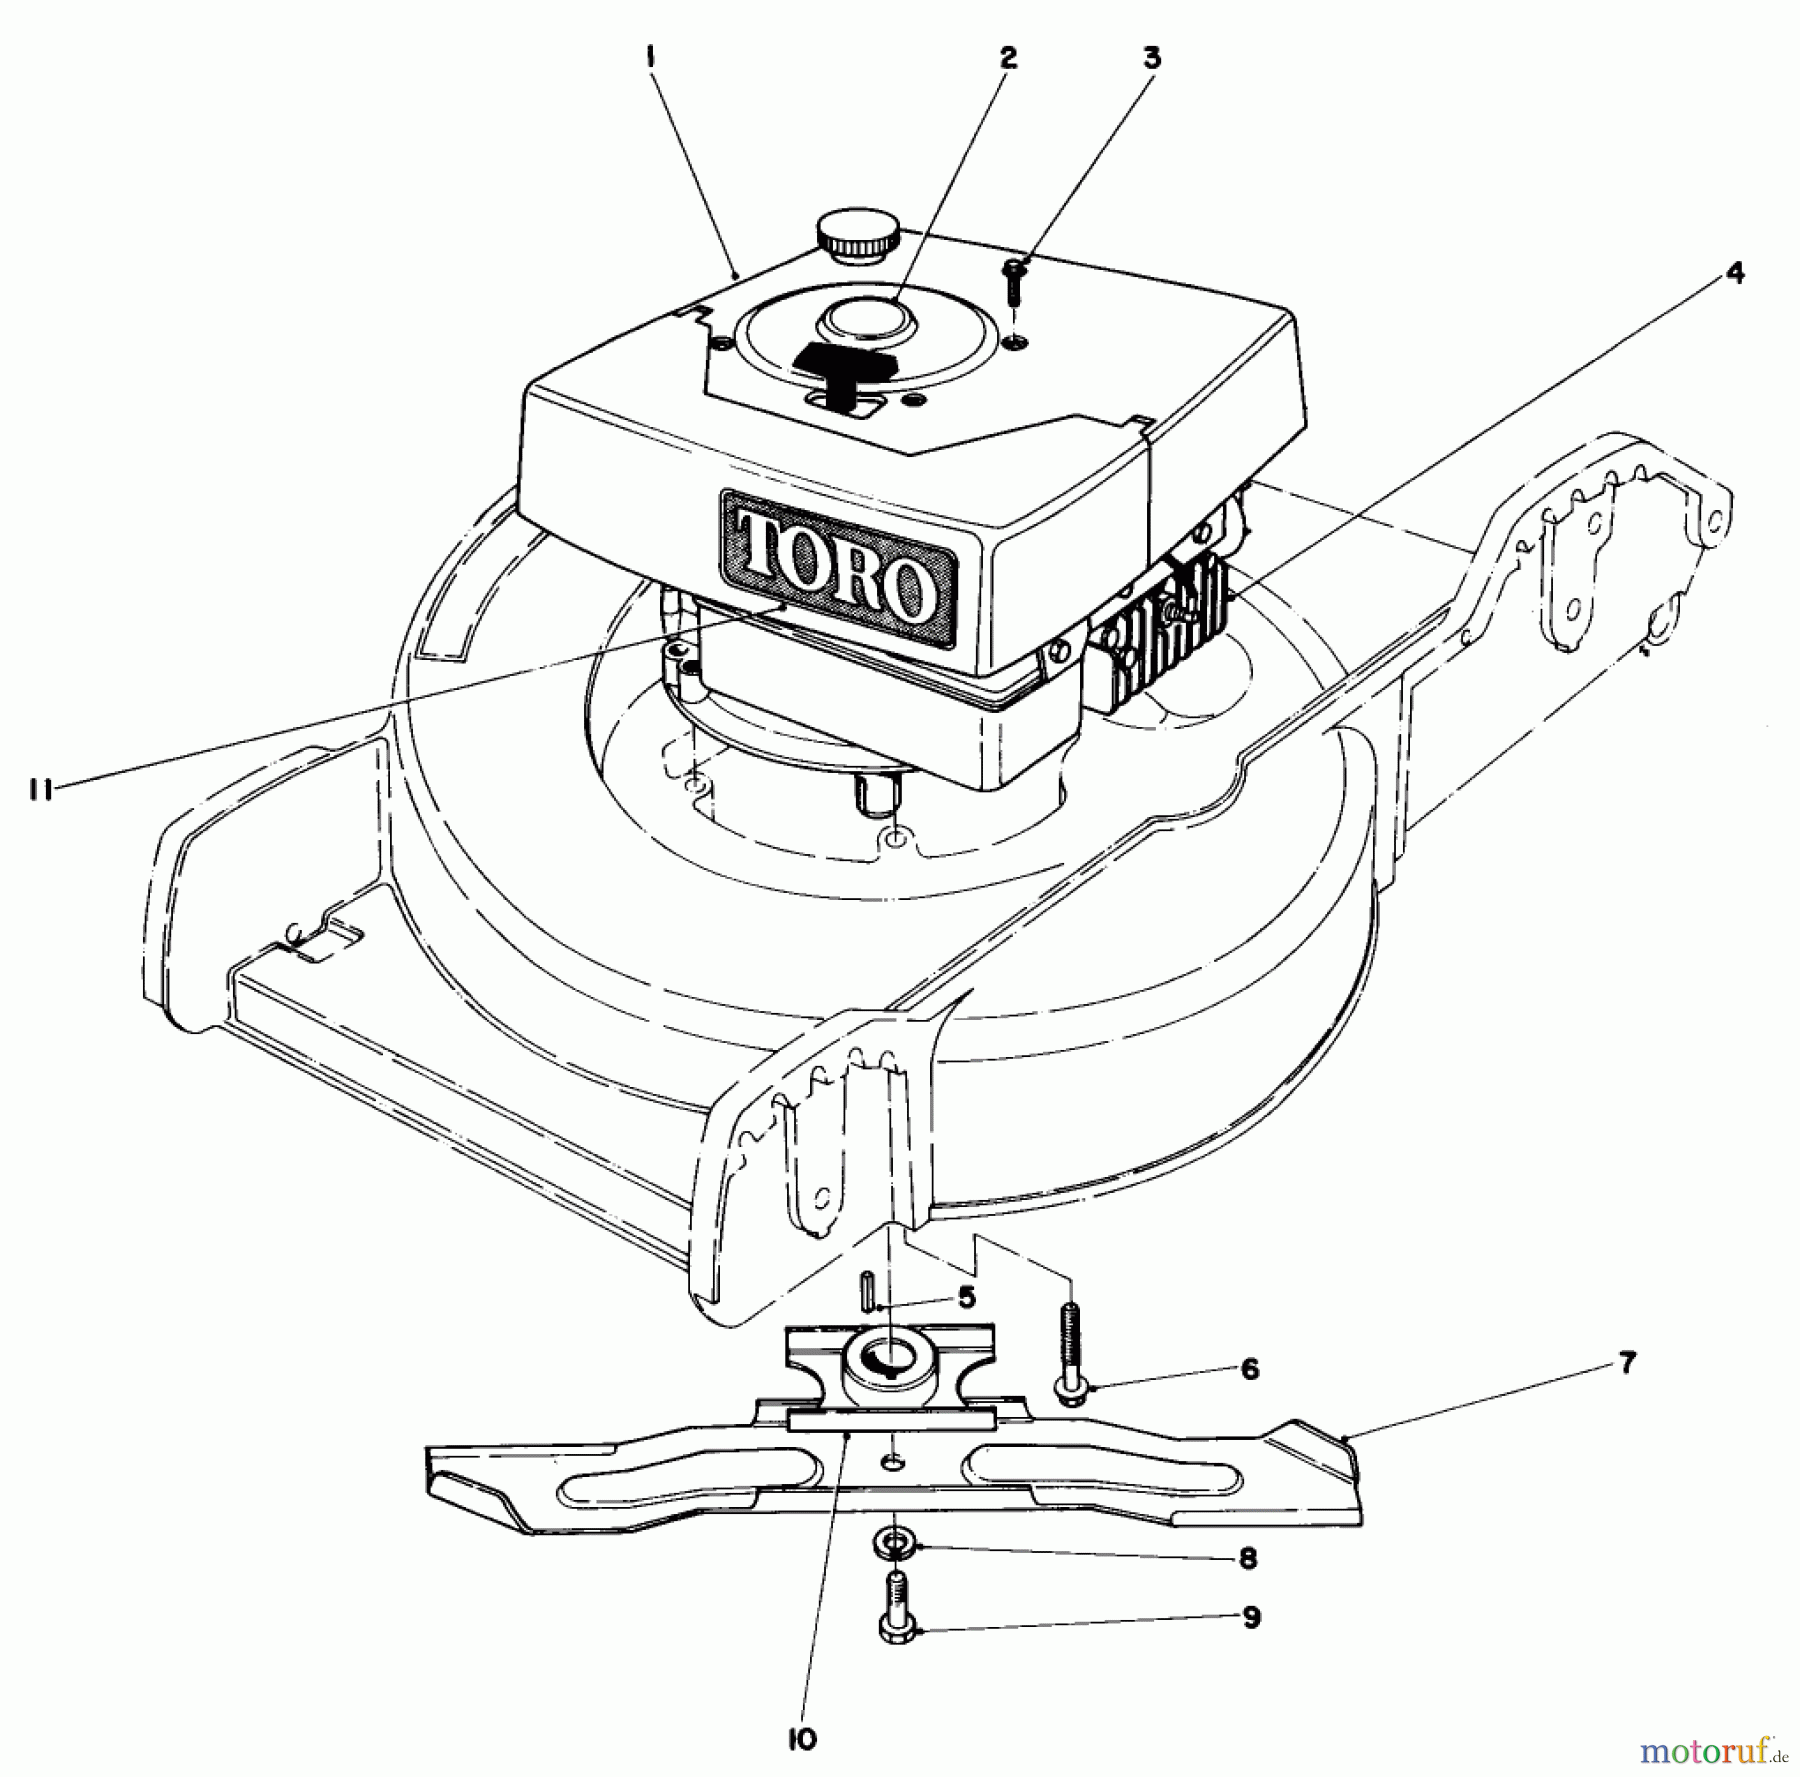  Toro Neu Mowers, Walk-Behind Seite 1 20698 - Toro Lawnmower, 1982 (2000001-2999999) ENGINE ASSEMBLY